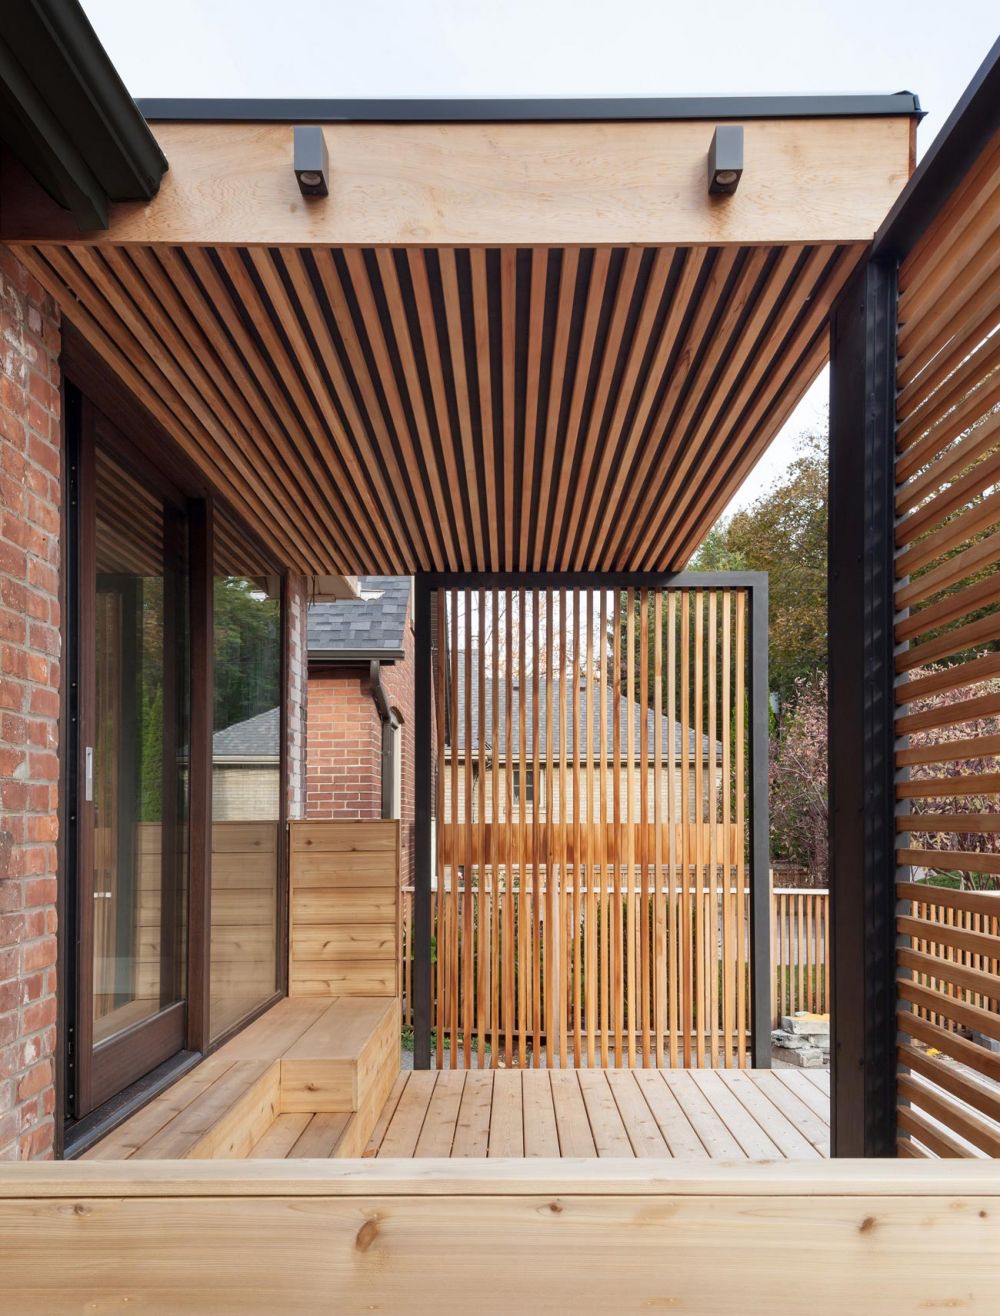 9 Ide Dekorasi Wood Slat yang Bikin Rumah Lebih Natural dan Manis